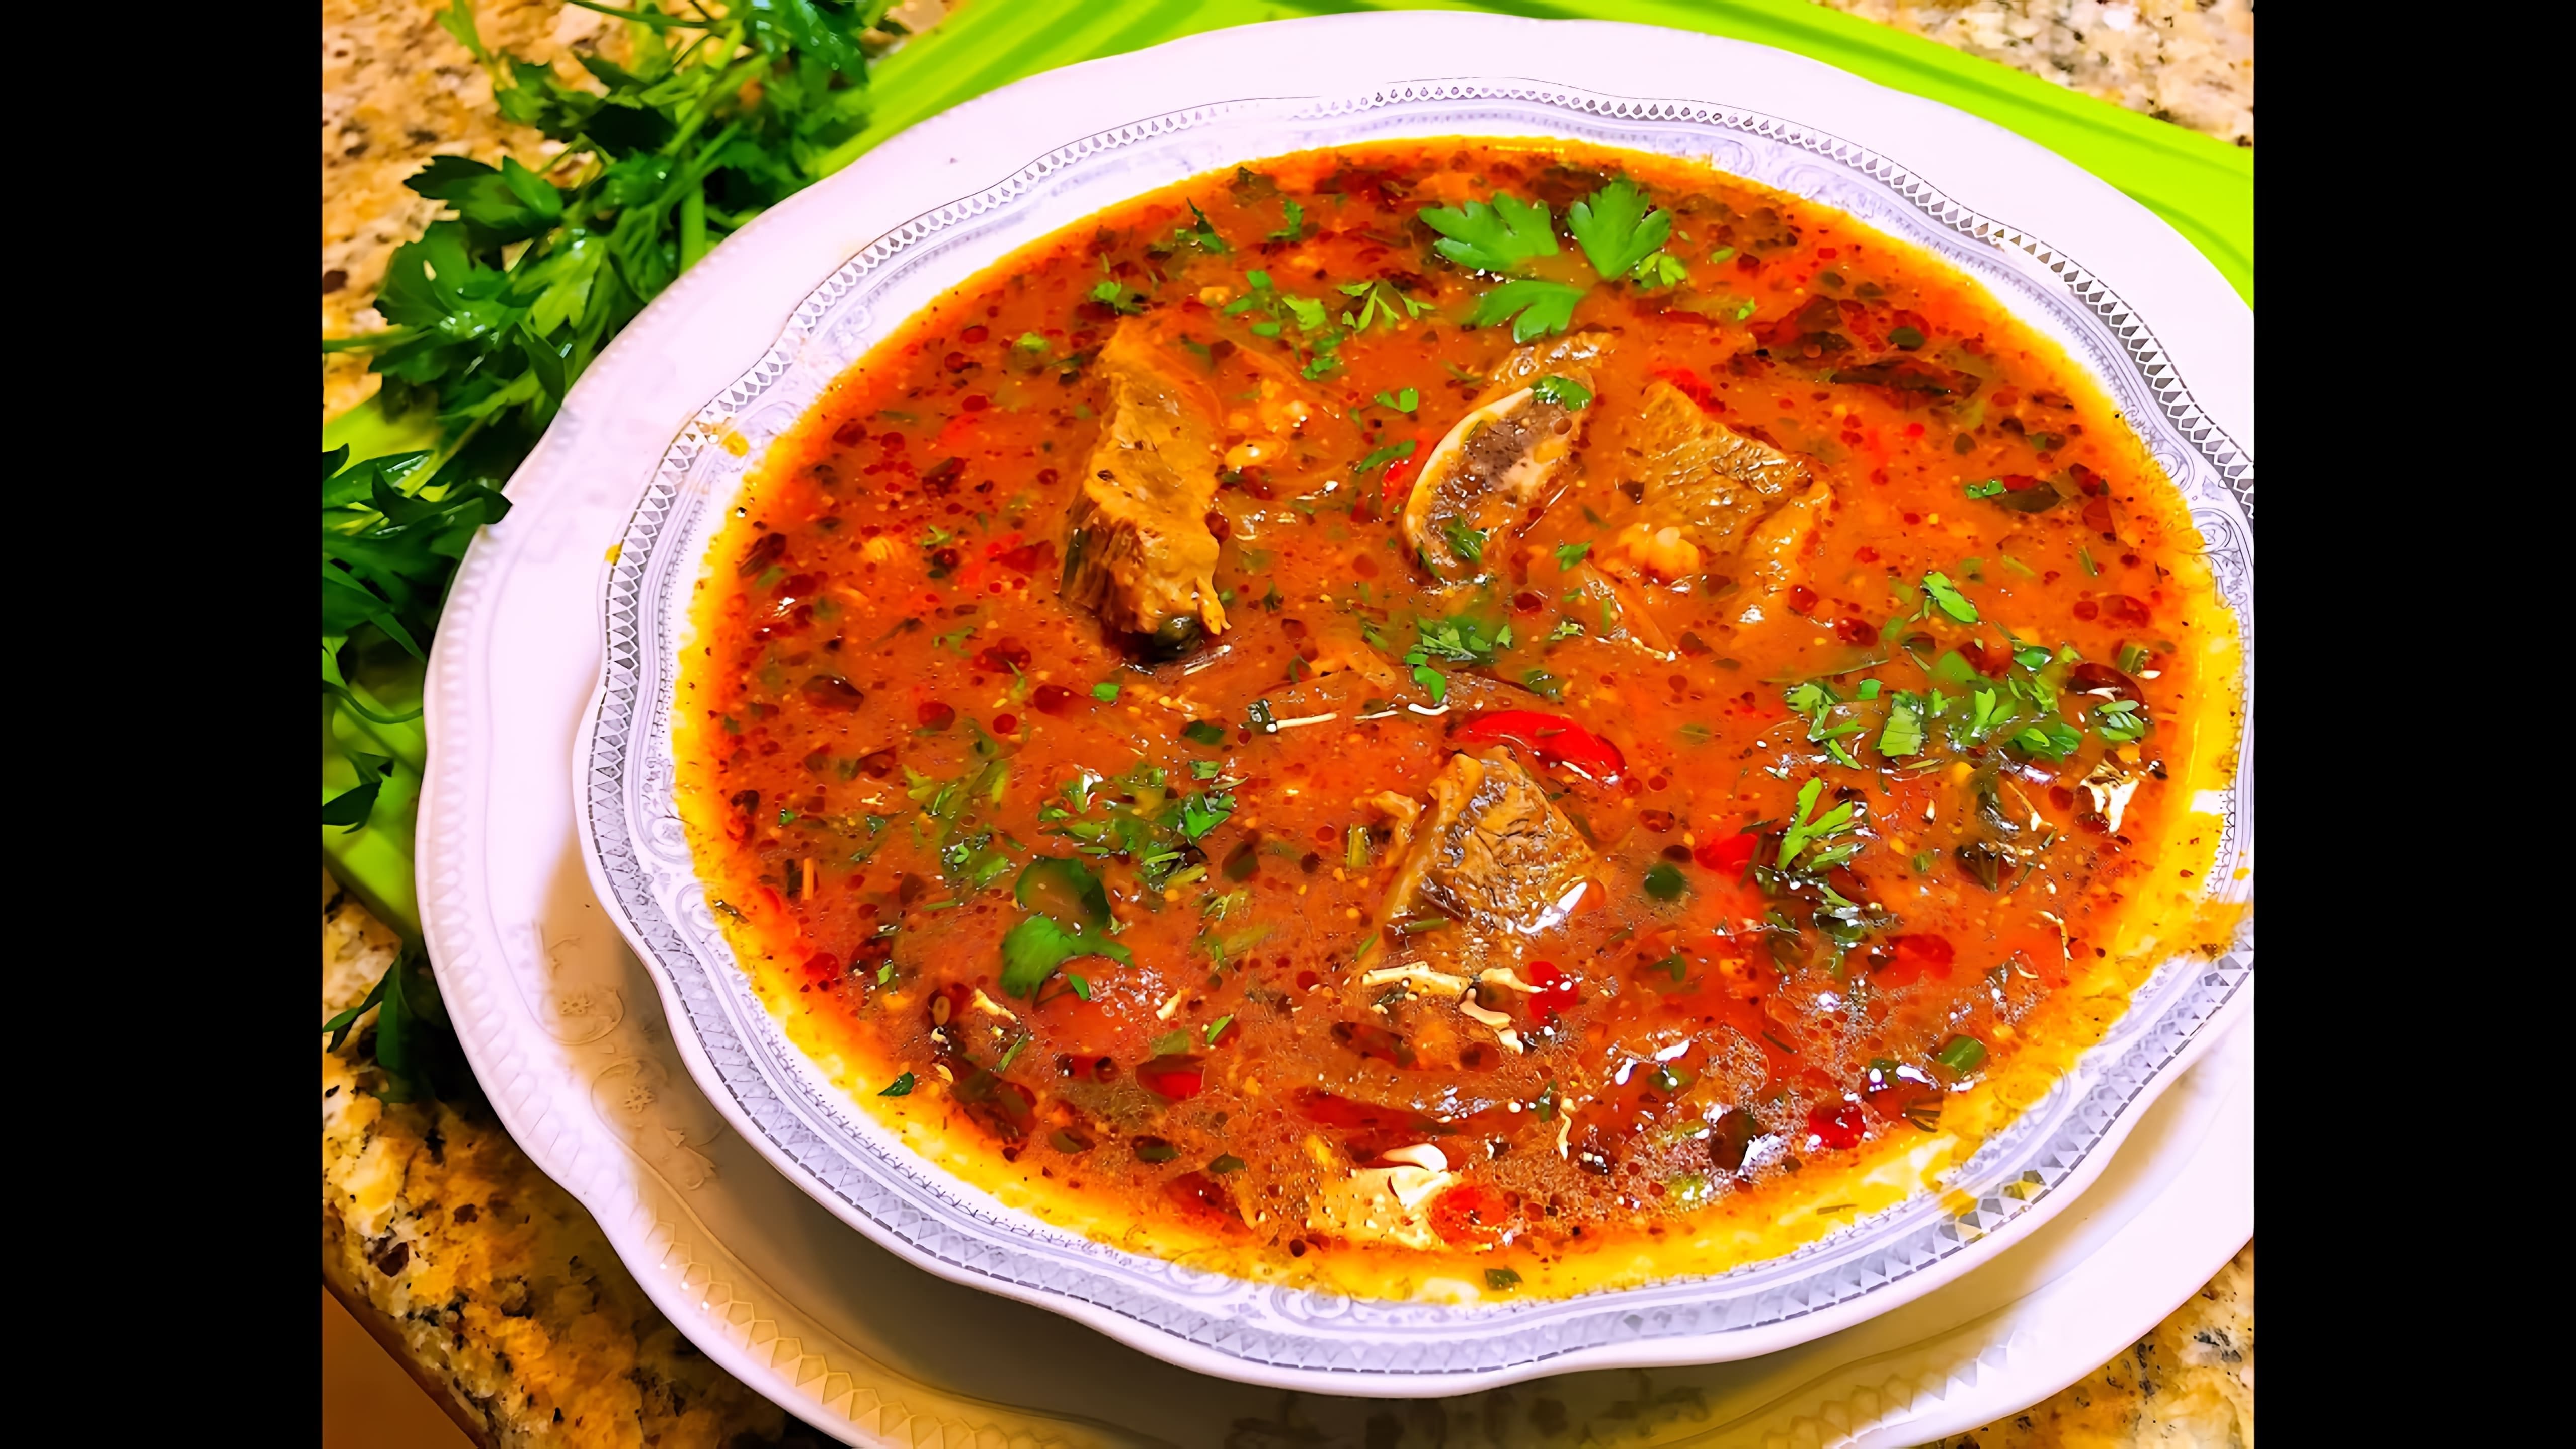 В этом видео демонстрируется процесс приготовления грузинского супа харчо